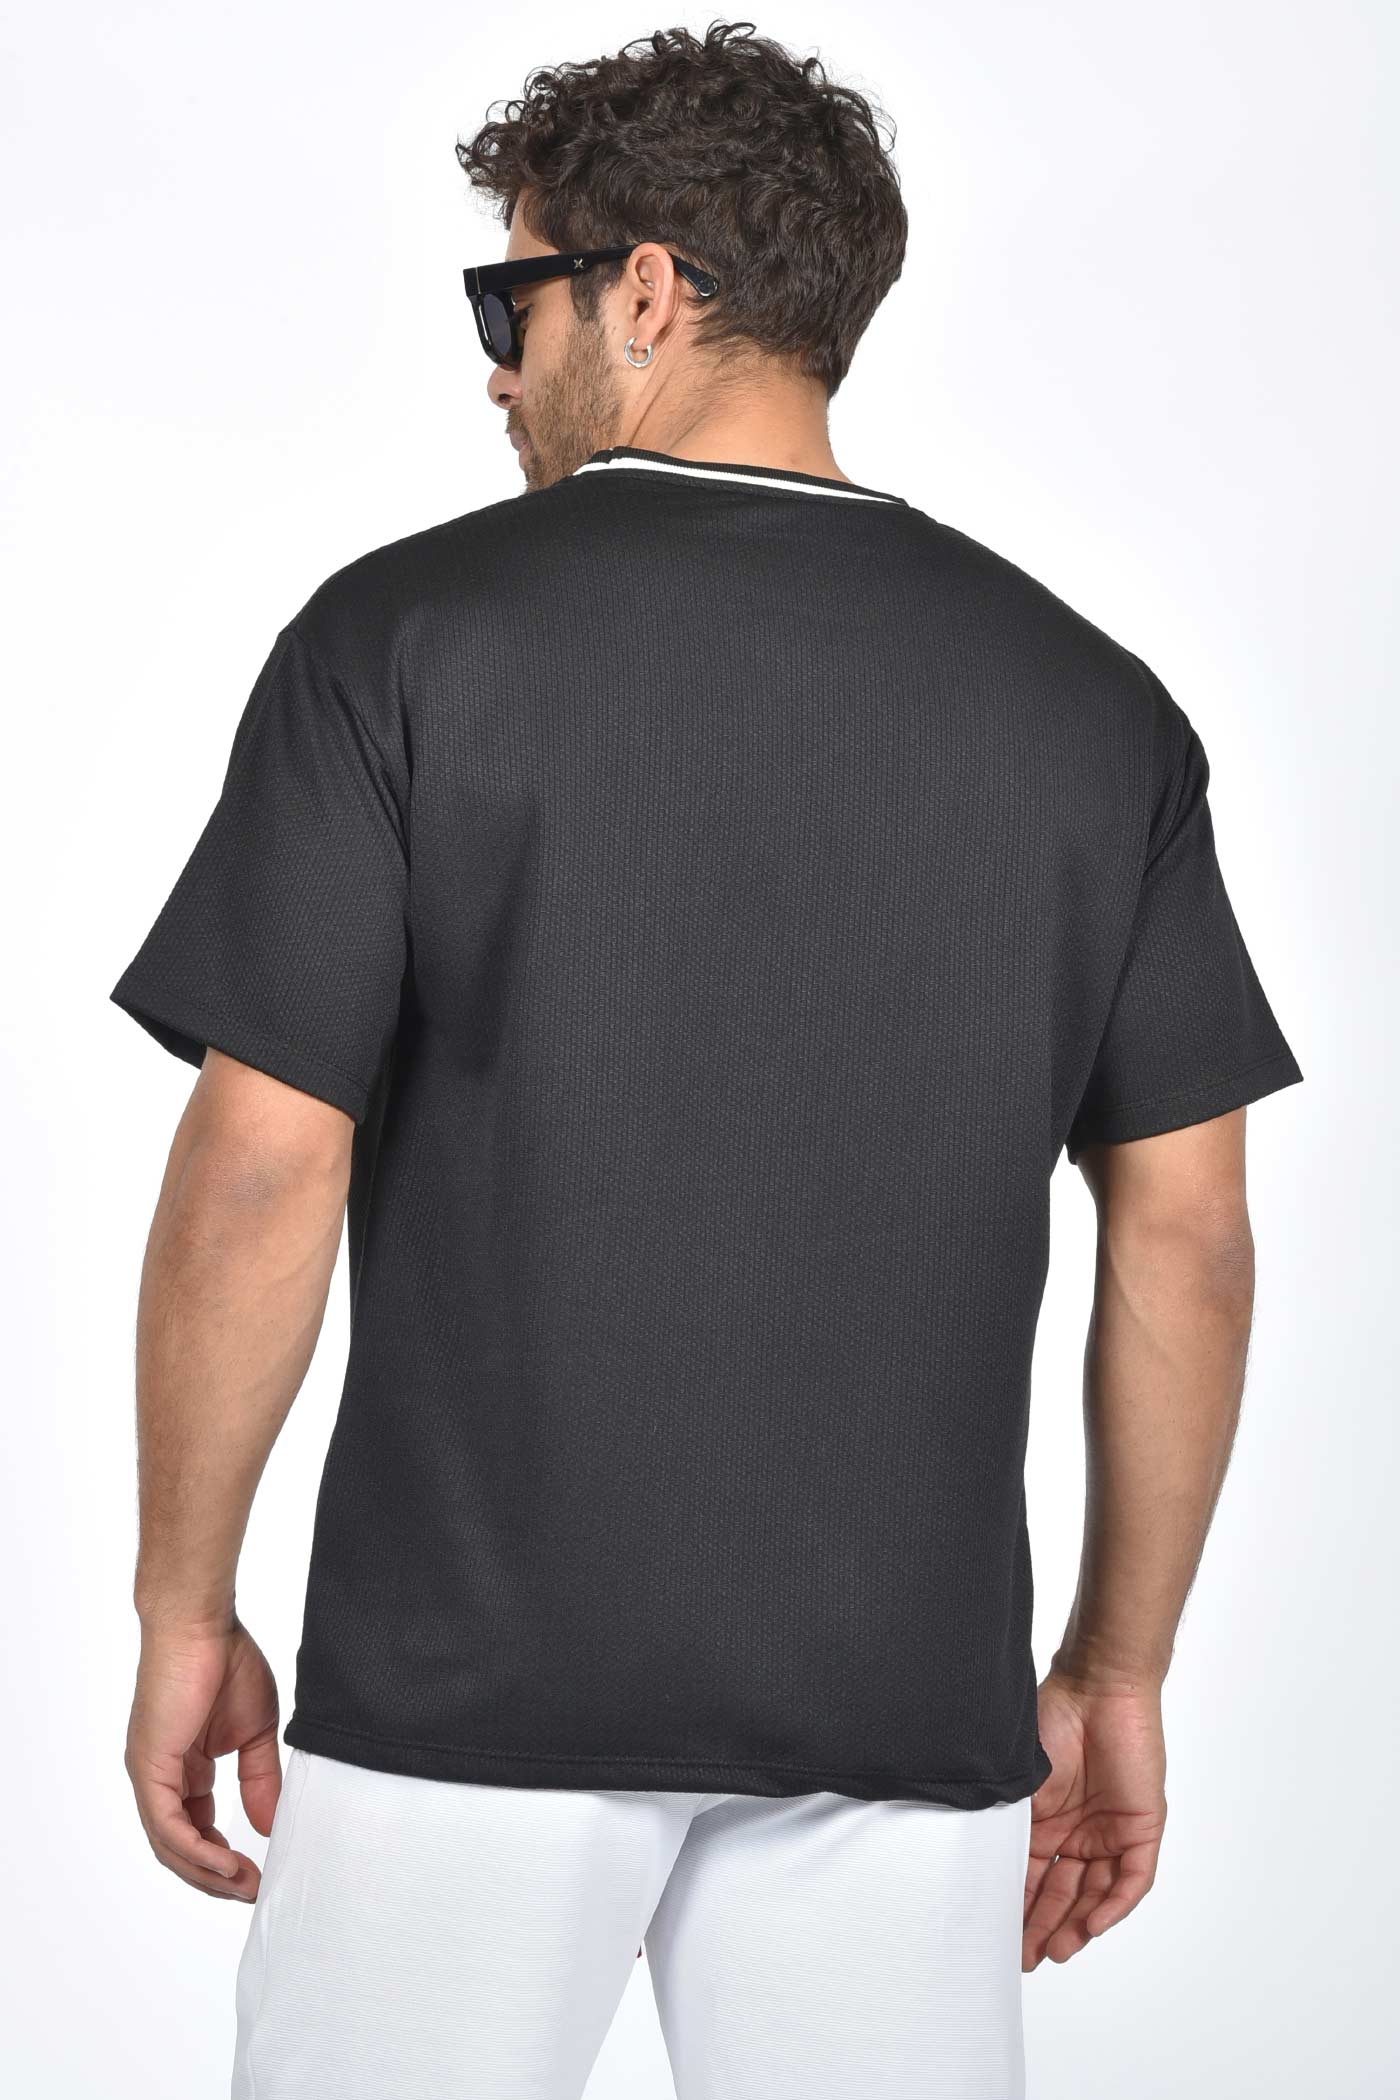 ανδρικό-oversized-t-shirt-με-δίχρωμο-ριπ-στον-λαιμό